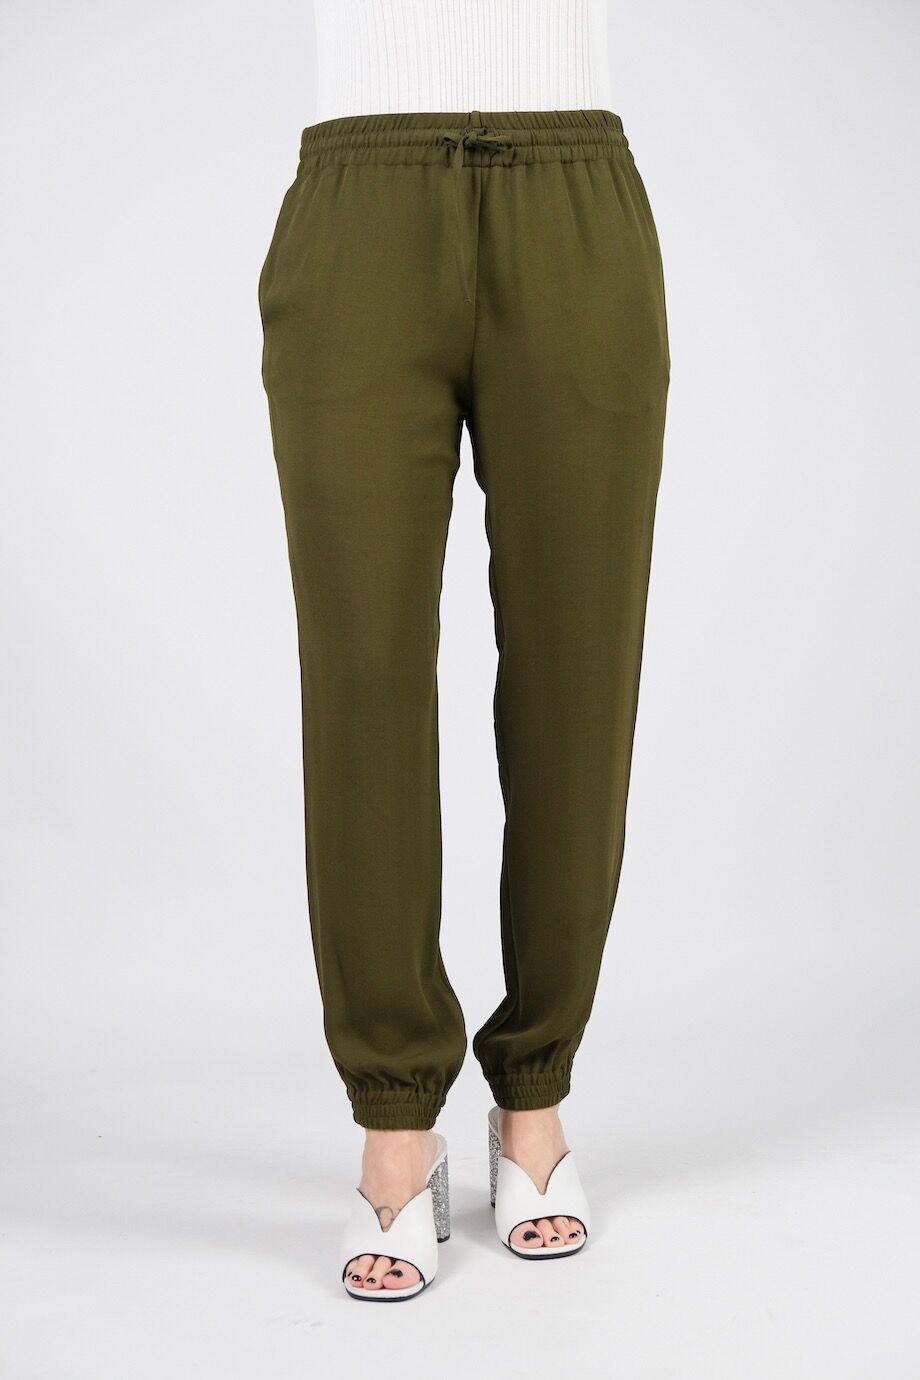 image 2 Шёлковые брюки болотного цвета на резинке